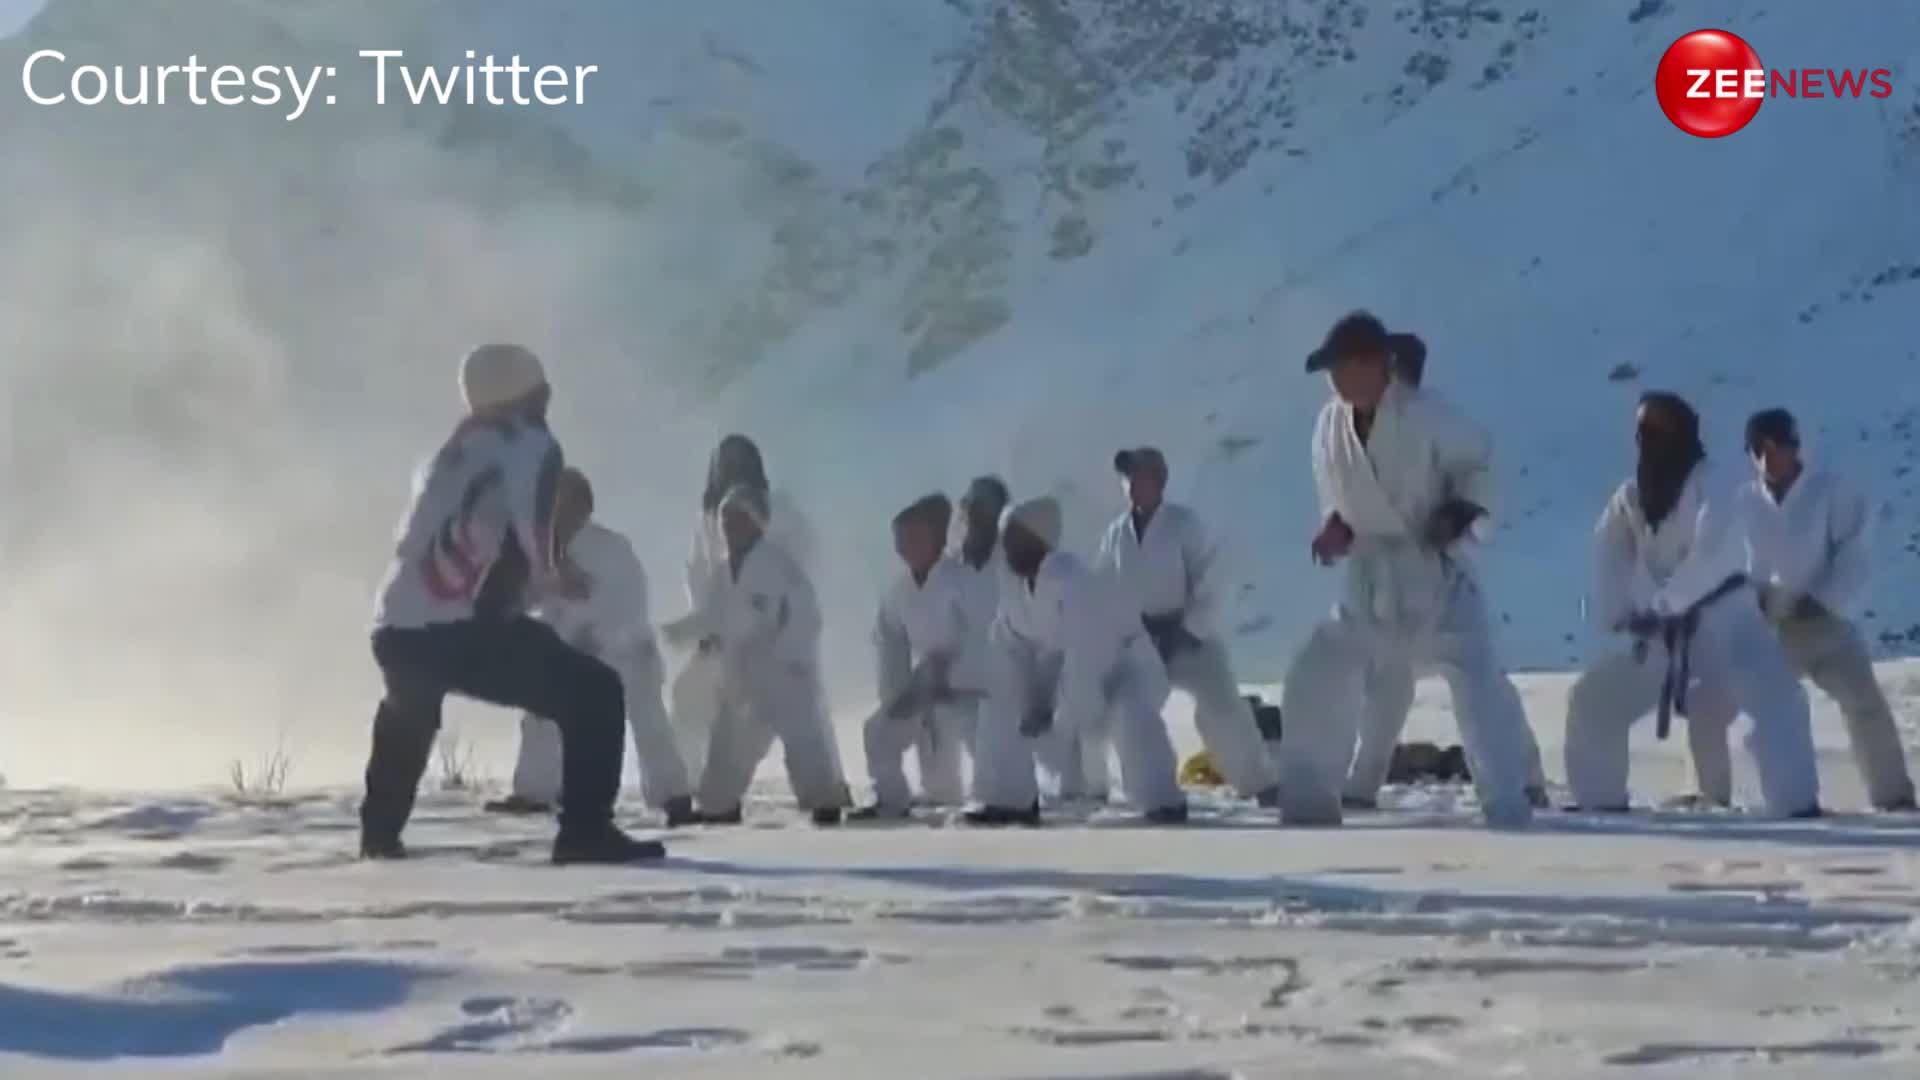 हिमालय में बर्फ से लदे पहाड़ों के बीच मार्शल आर्ट, देखकर दिल हो जाएगा खुश